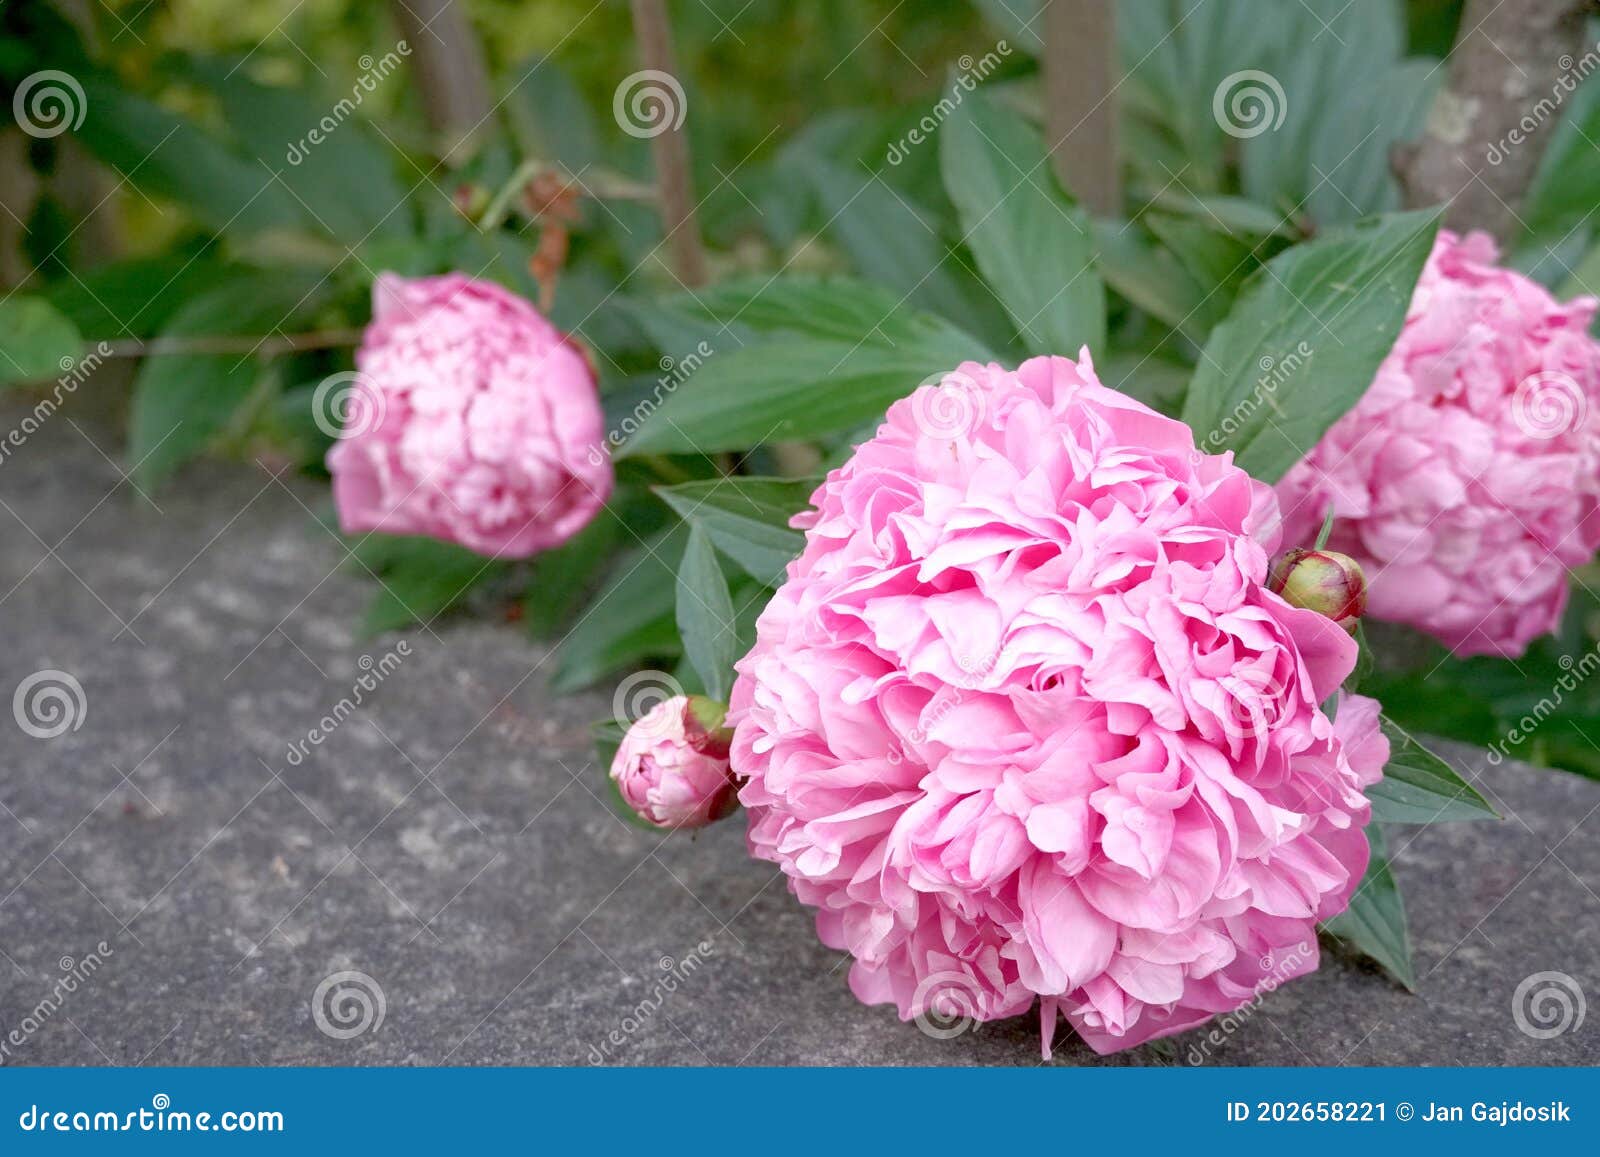 Flores De Peonía Rosadas Esponjosas Apoyadas En Una Valla De Hormigón Cerca  Del Jardín. Imagen de archivo - Imagen de mullido, fragilidad: 202658221